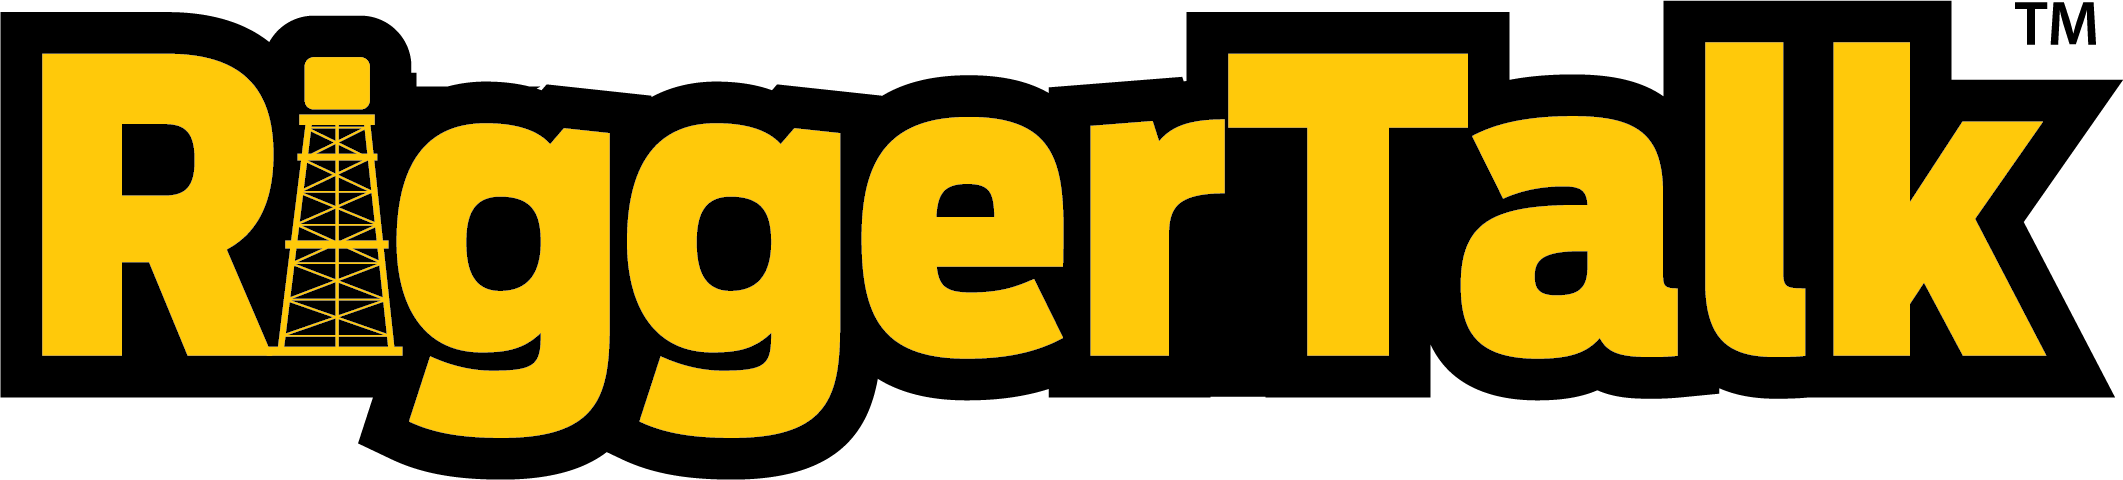 RiggerTalk TM Logo 2019 (1).png